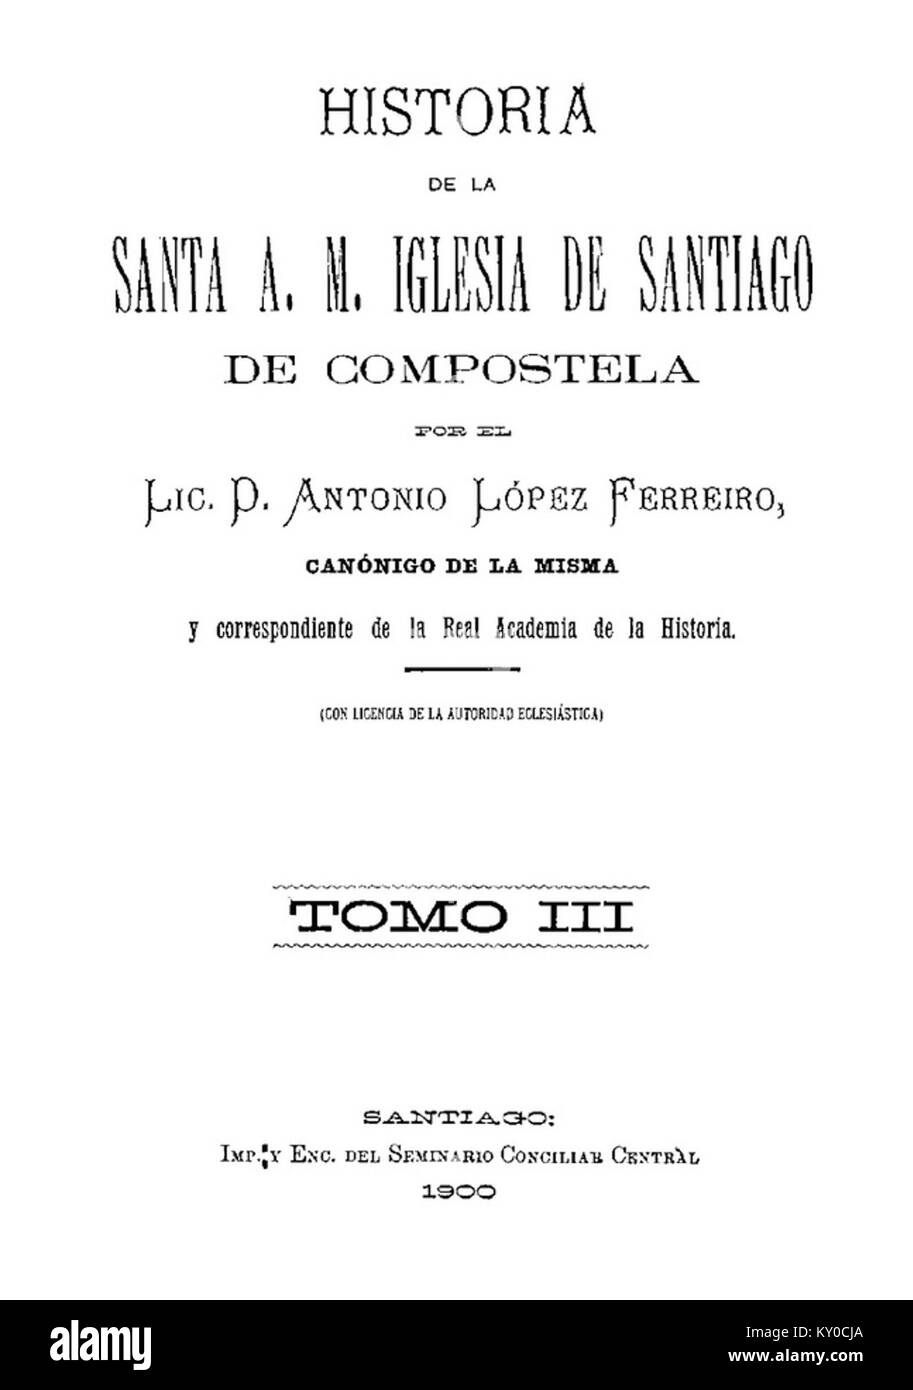 Historia de la Santa A. M. Iglesia de Santiago de Compostela por el Lic. D. Antonio López Ferreiro, canónigo de la misma, 1900, Tomo III Foto de stock